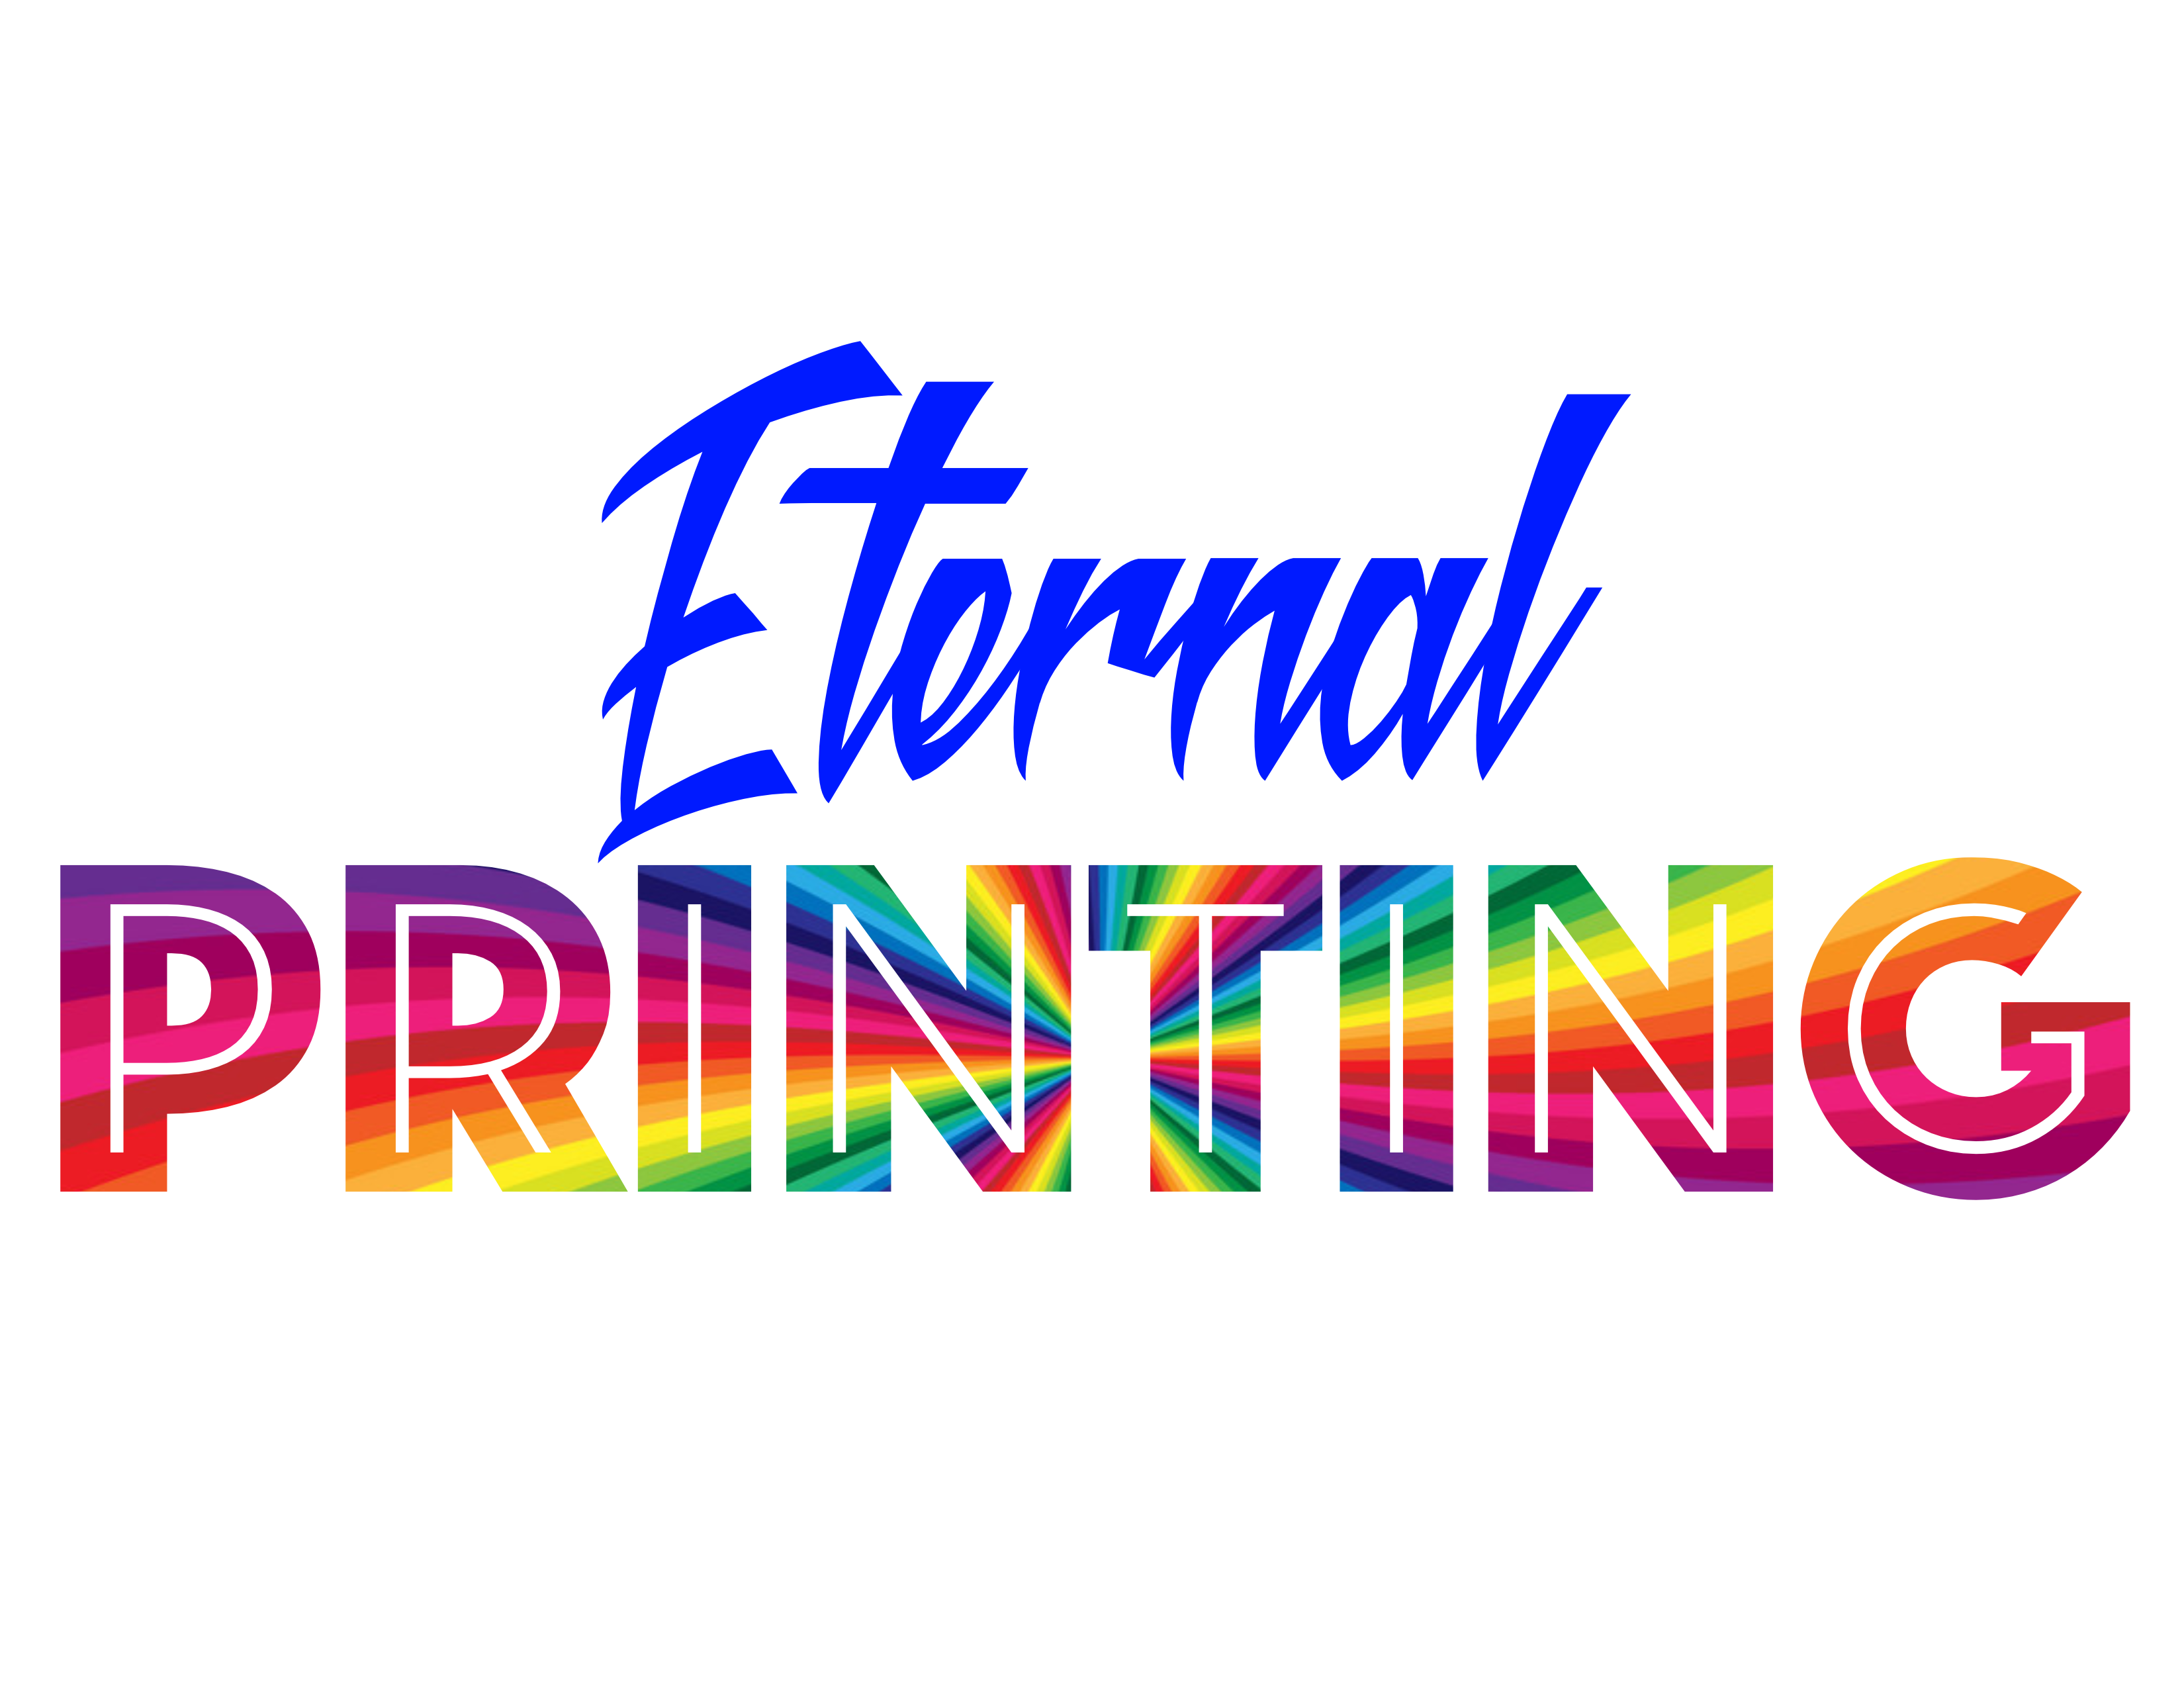 Eternal Printing